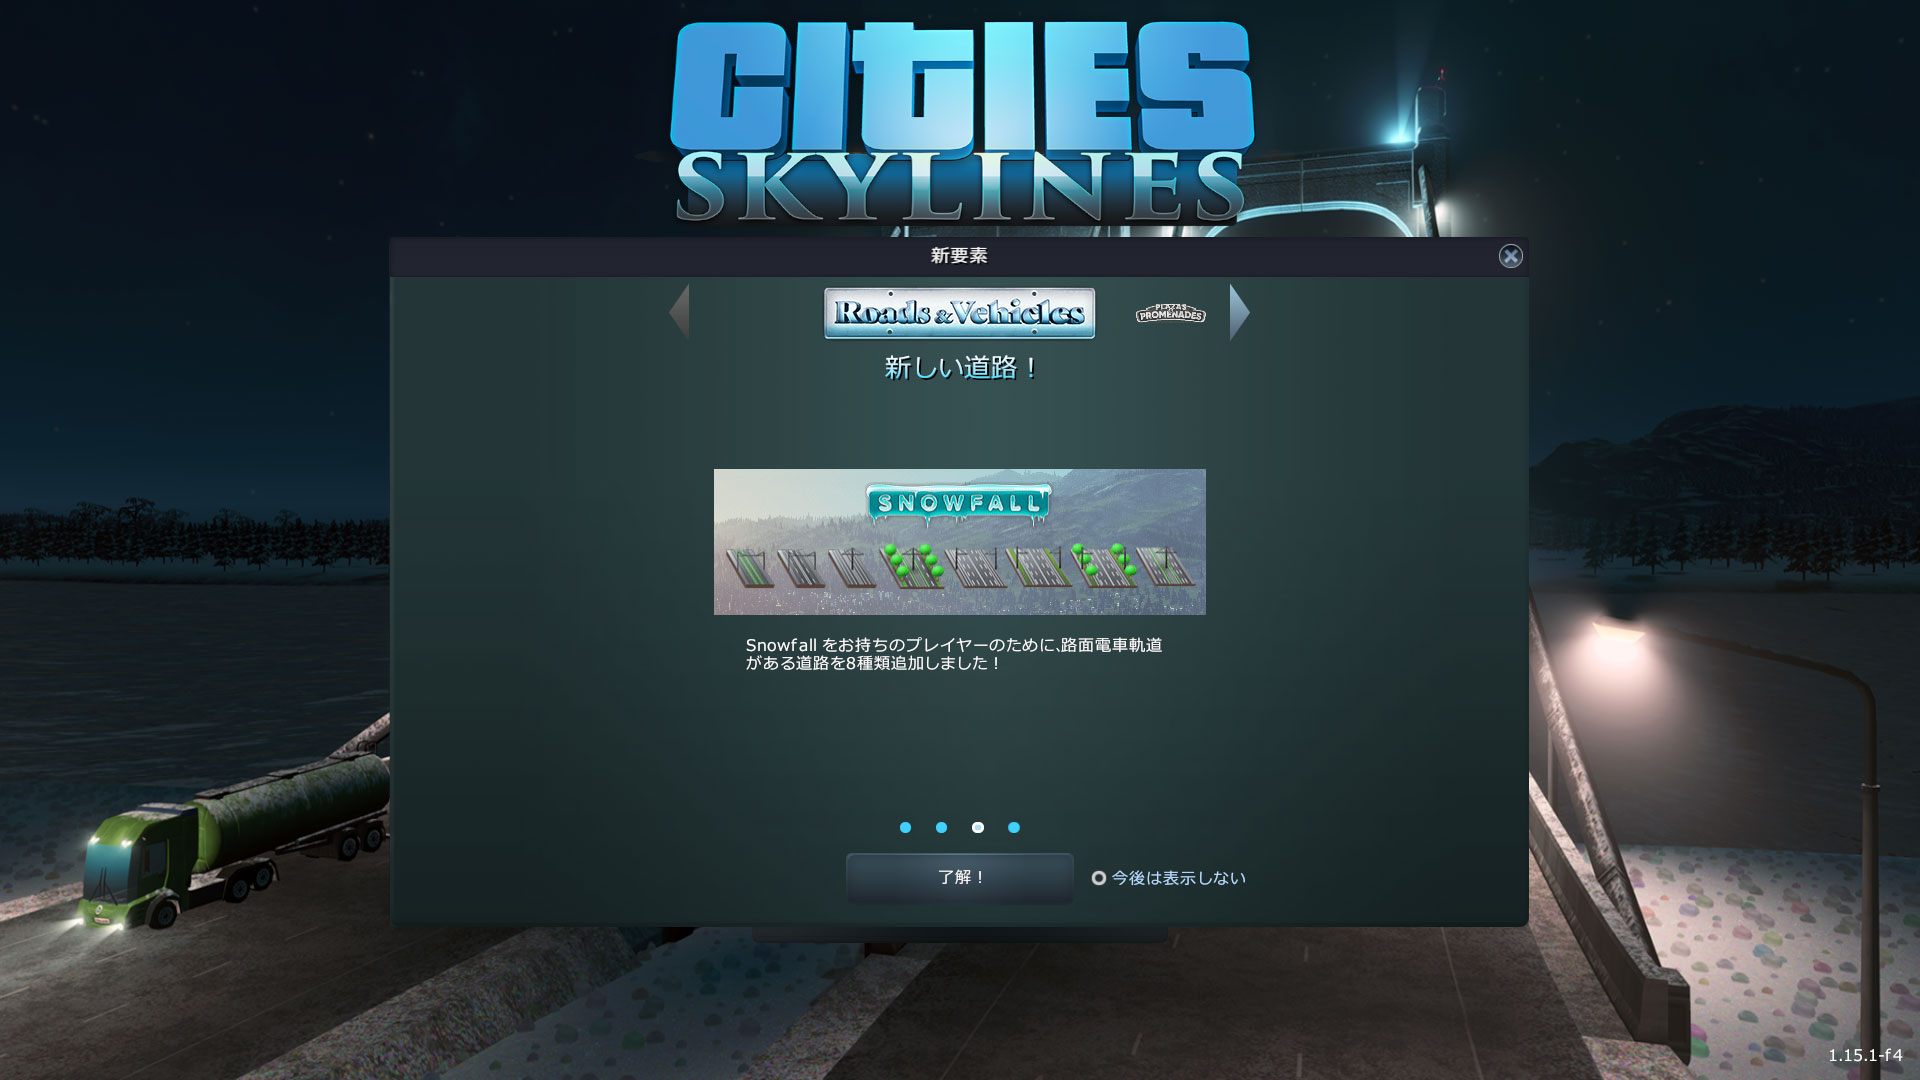 Cities_Skylines-3325